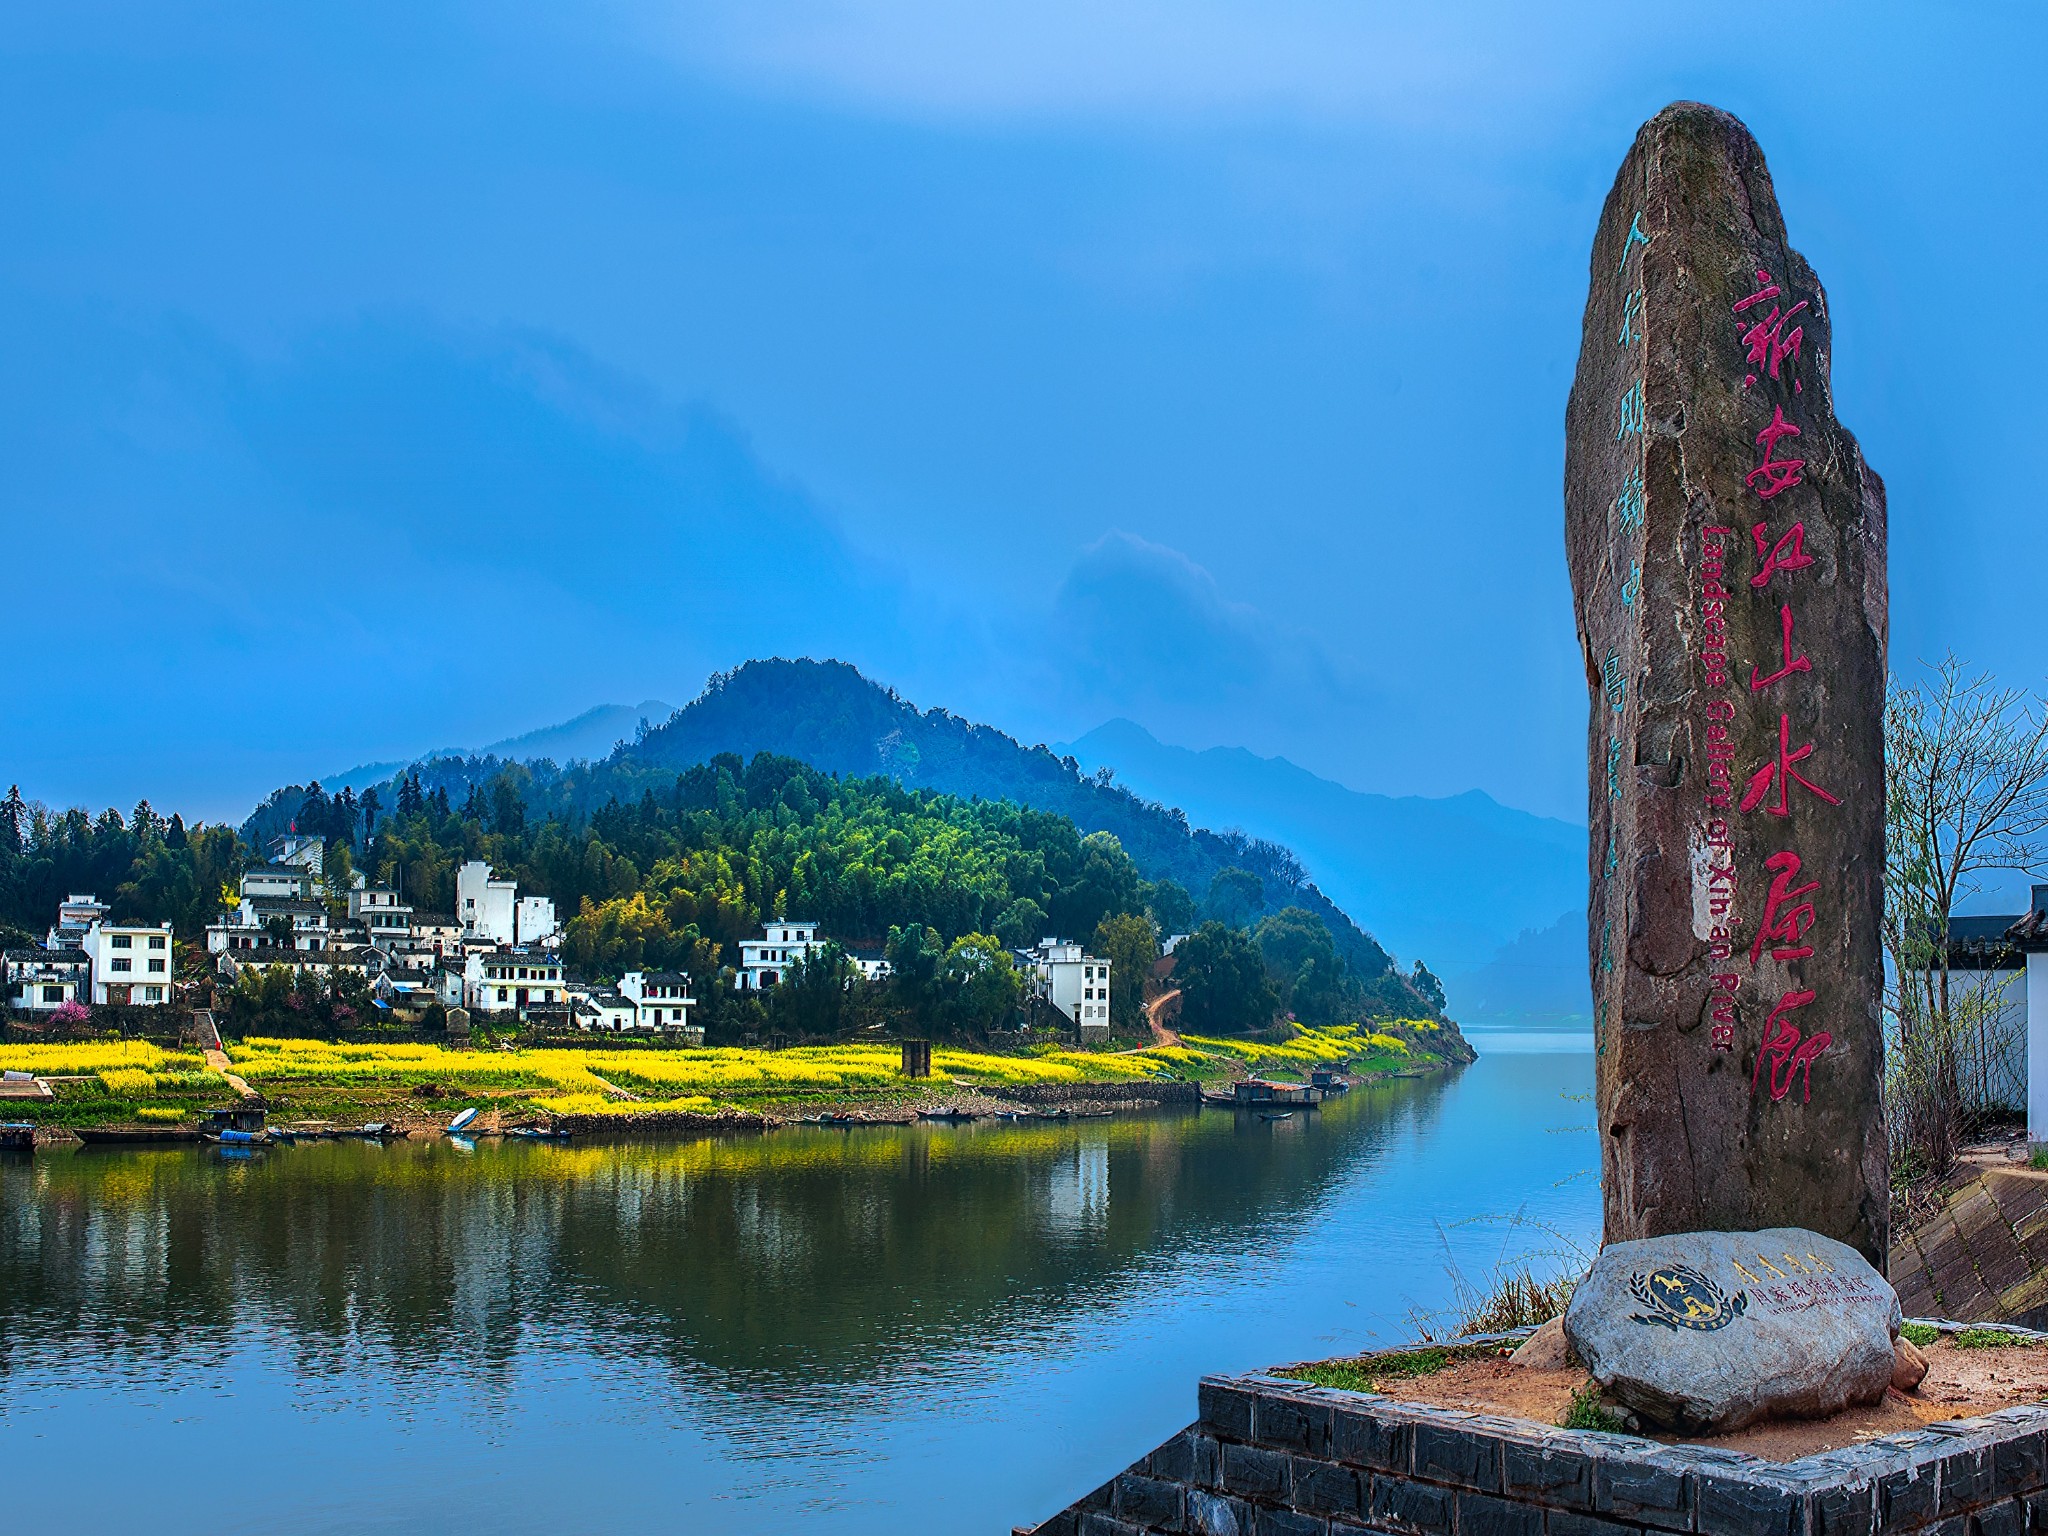 发源于安徽的休宁,新安江由此绵延百里,又被称之为"山水画廊".